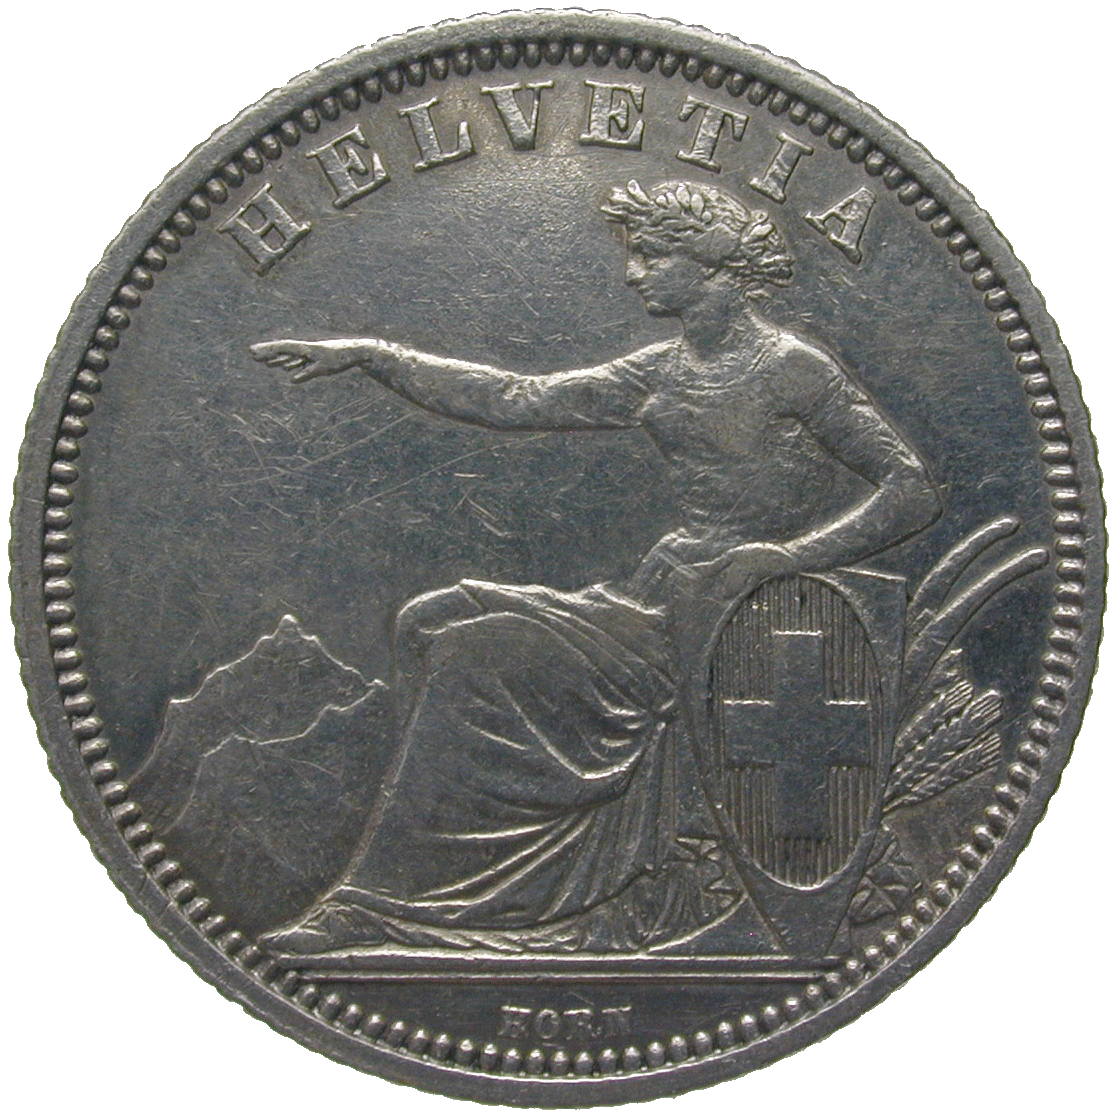 Schweizerische Eidgenossenschaft, 1 Franken 1861 (obverse)